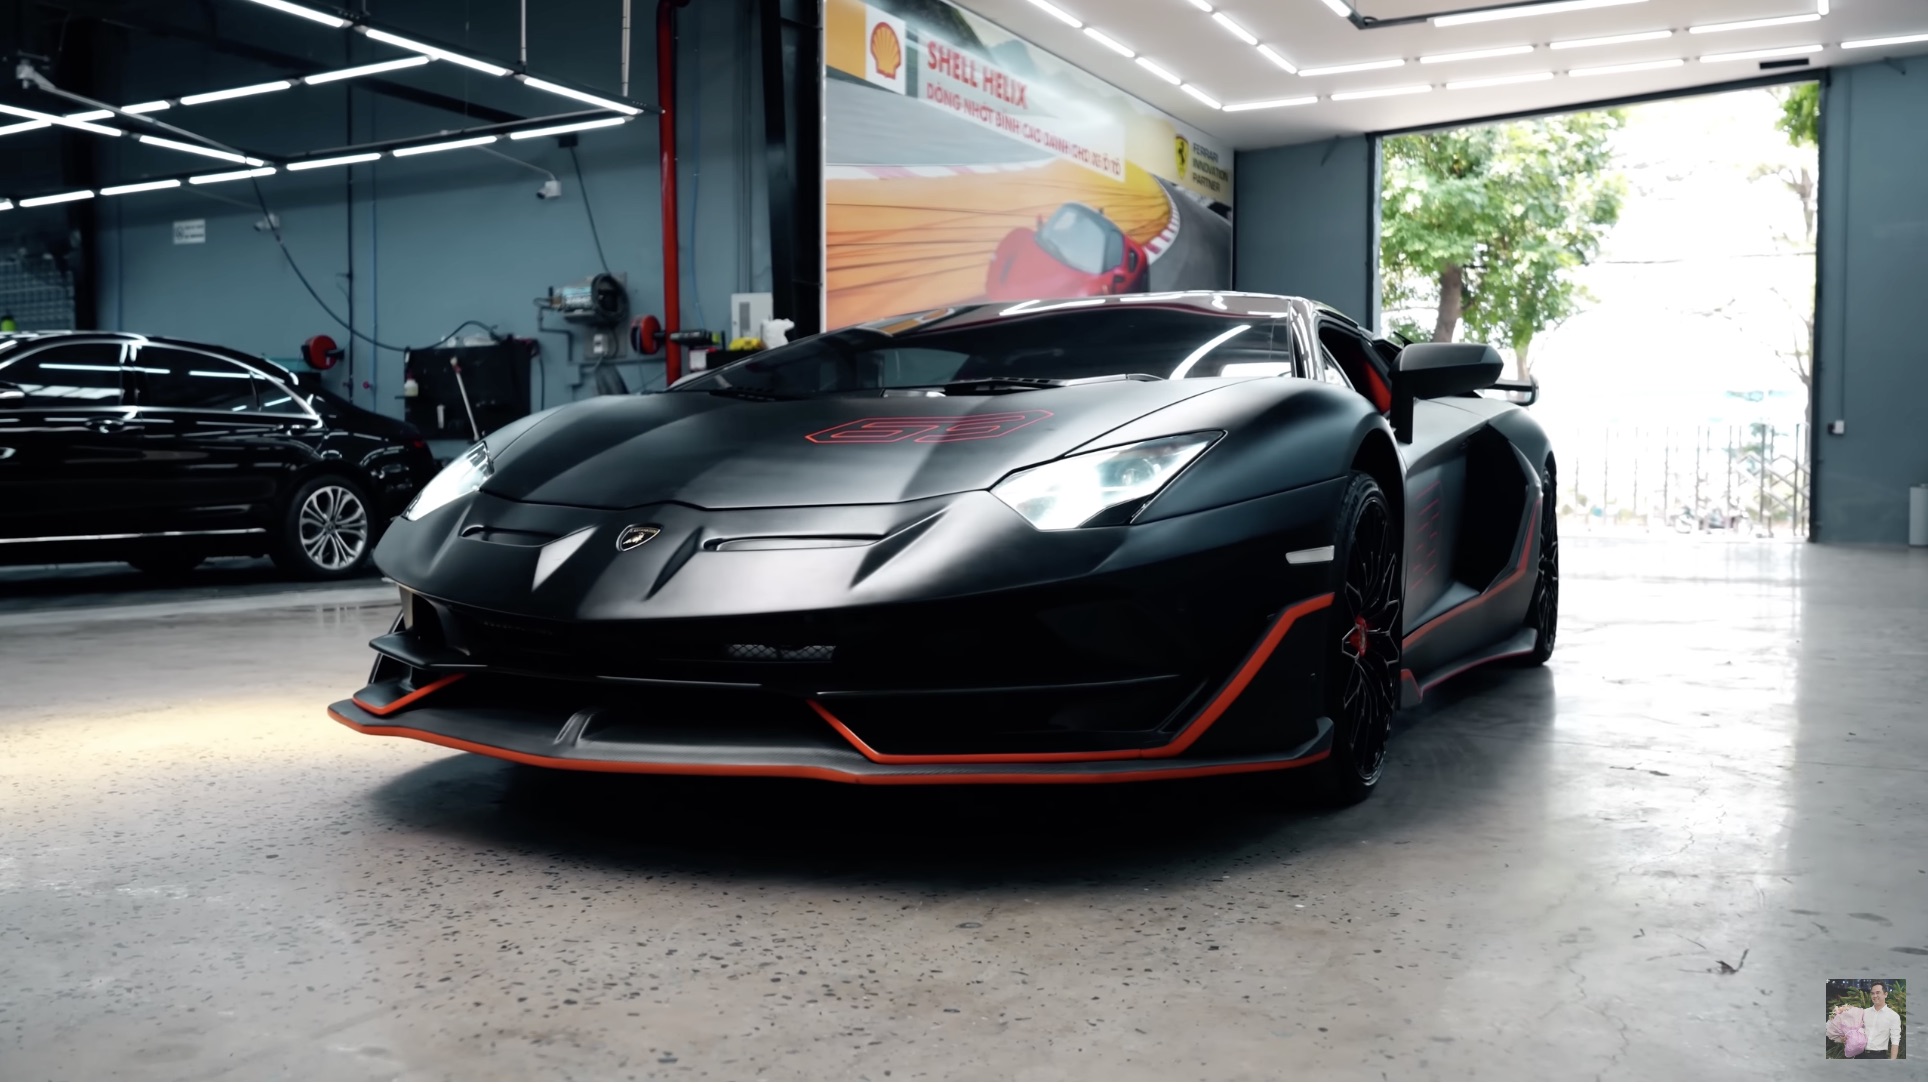 Chủ xe Lamborghini Aventador đưa yêu cầu độ khó, chủ xưởng tại TP. HCM nhăn mặt nhưng kết quả mỹ mãn - Ảnh 1.